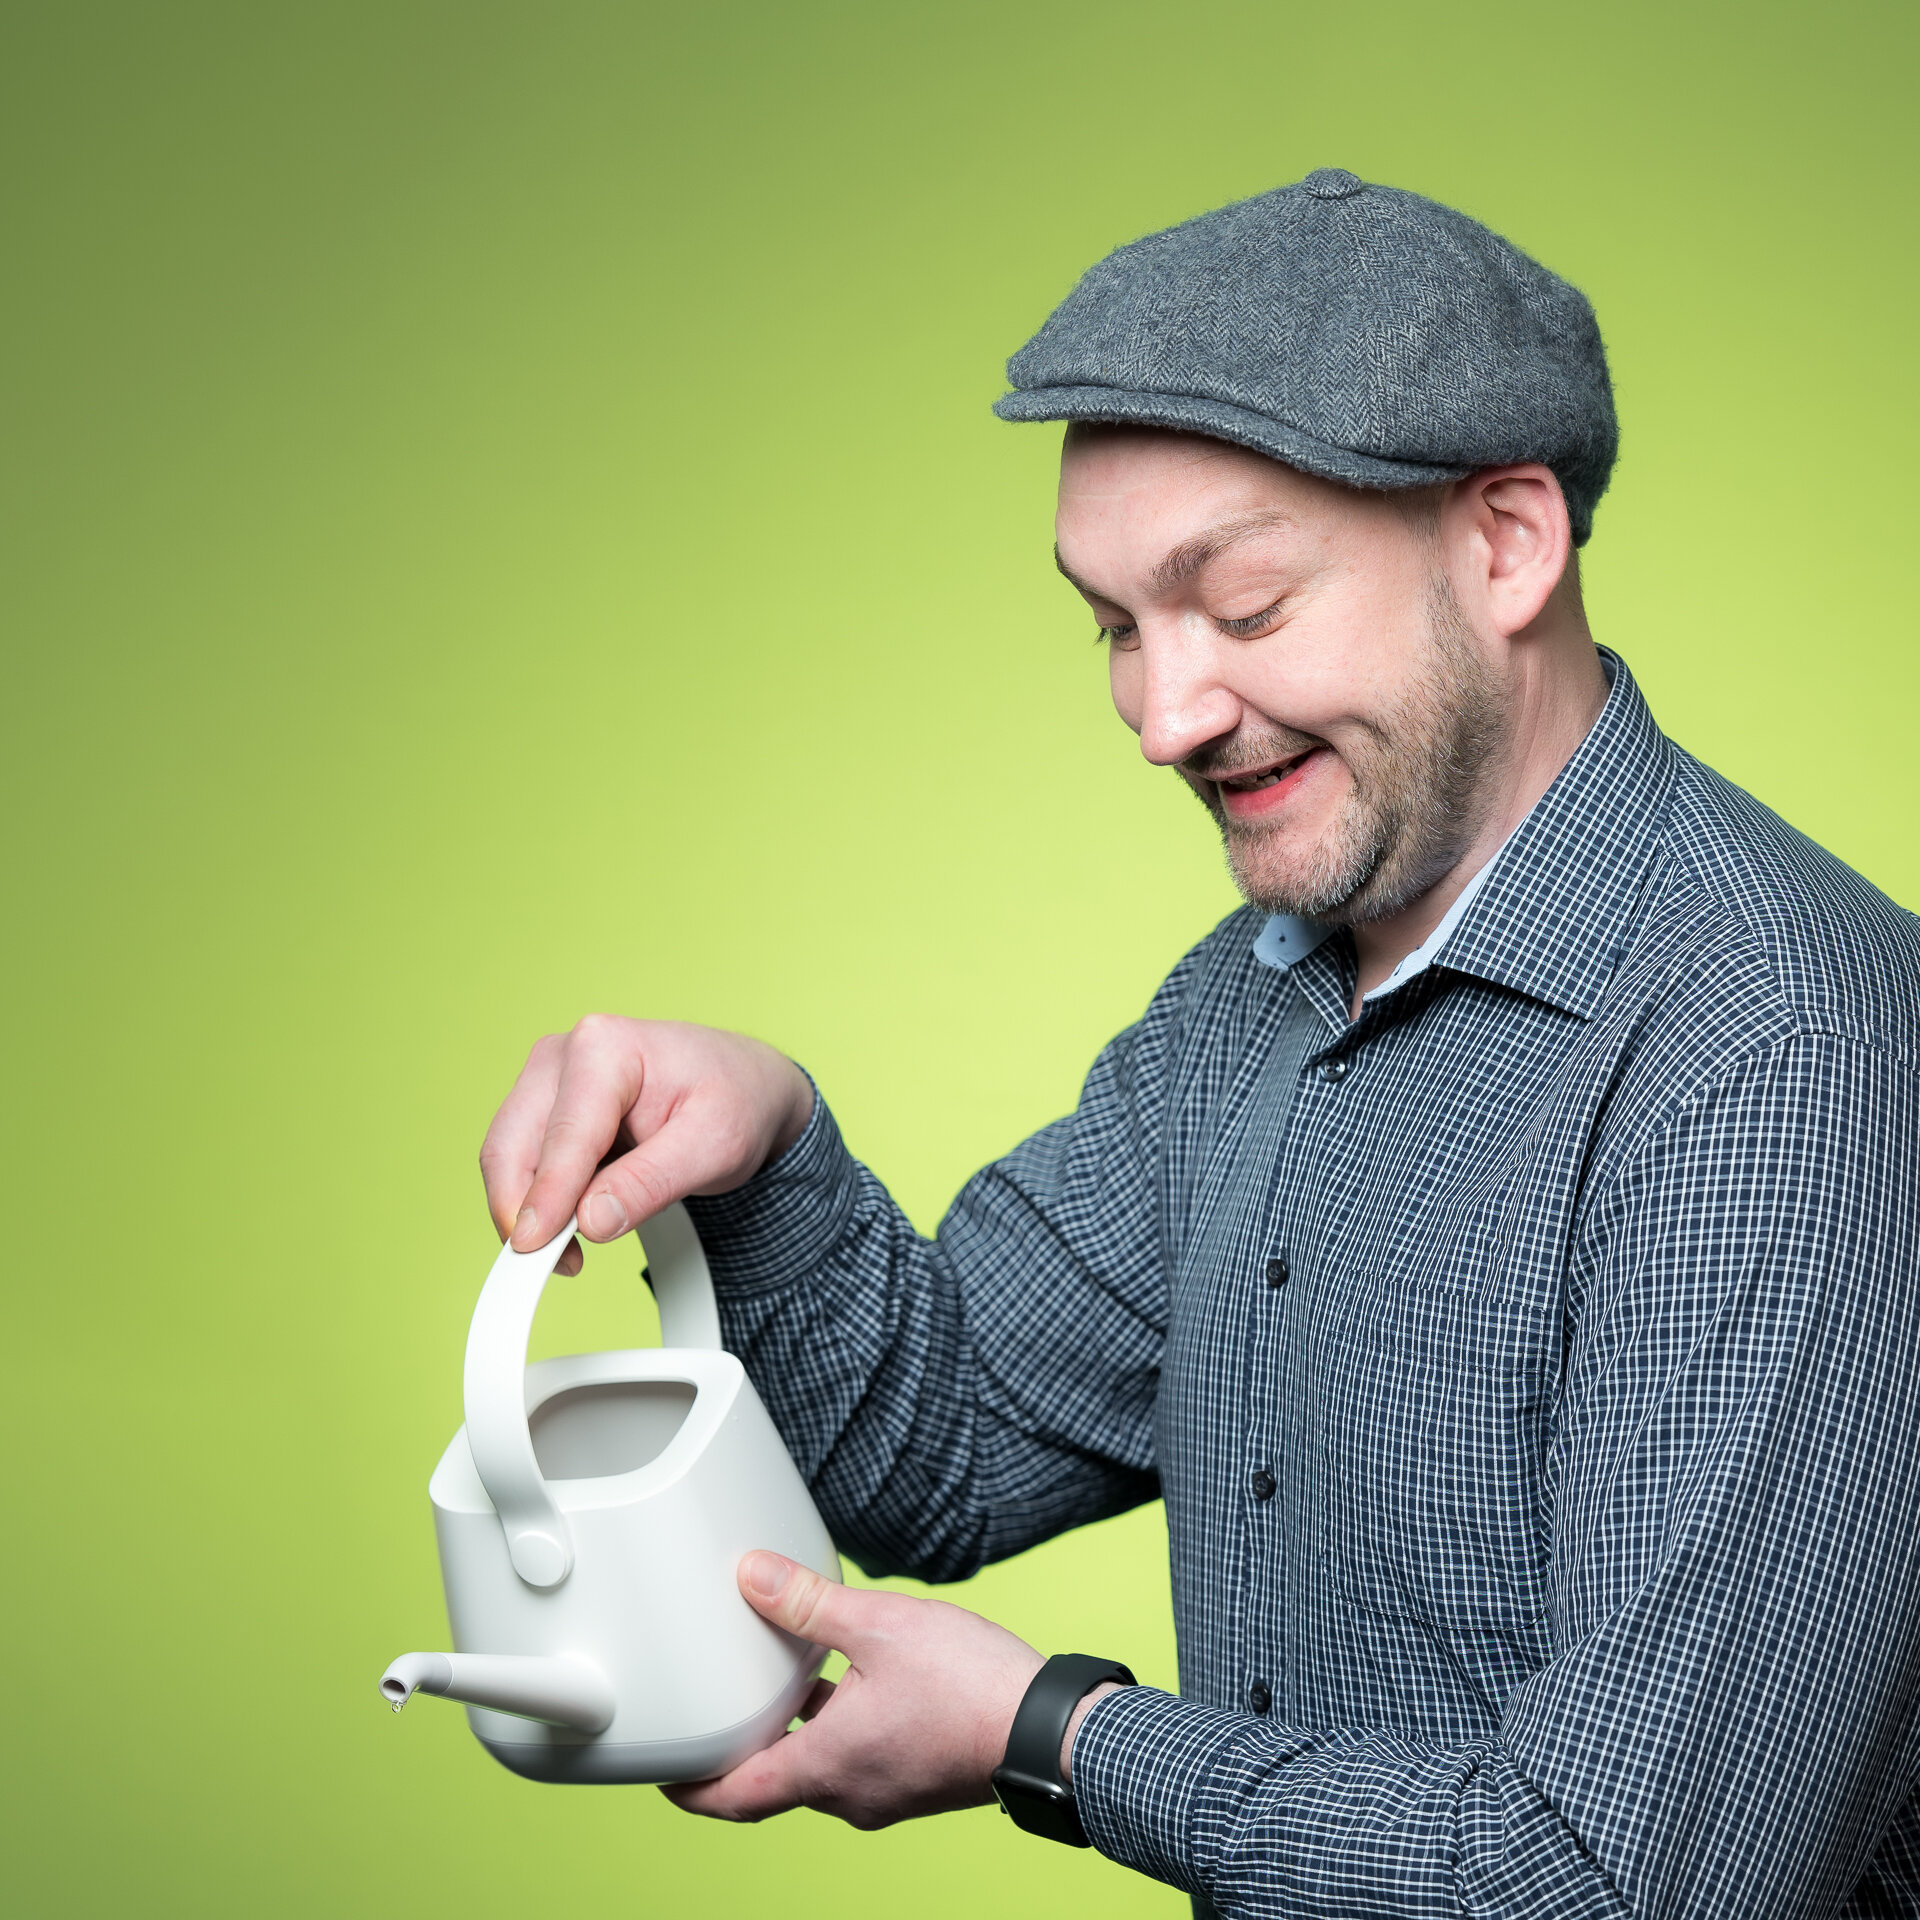 Kolja Schäfer hält lachend eine Gießkanne in der rechten Hand, stützt sie mit der linken und gießt nach unten. Dabei trägt er eine Schiebermütze. | © Bamboo Health Care GmbH